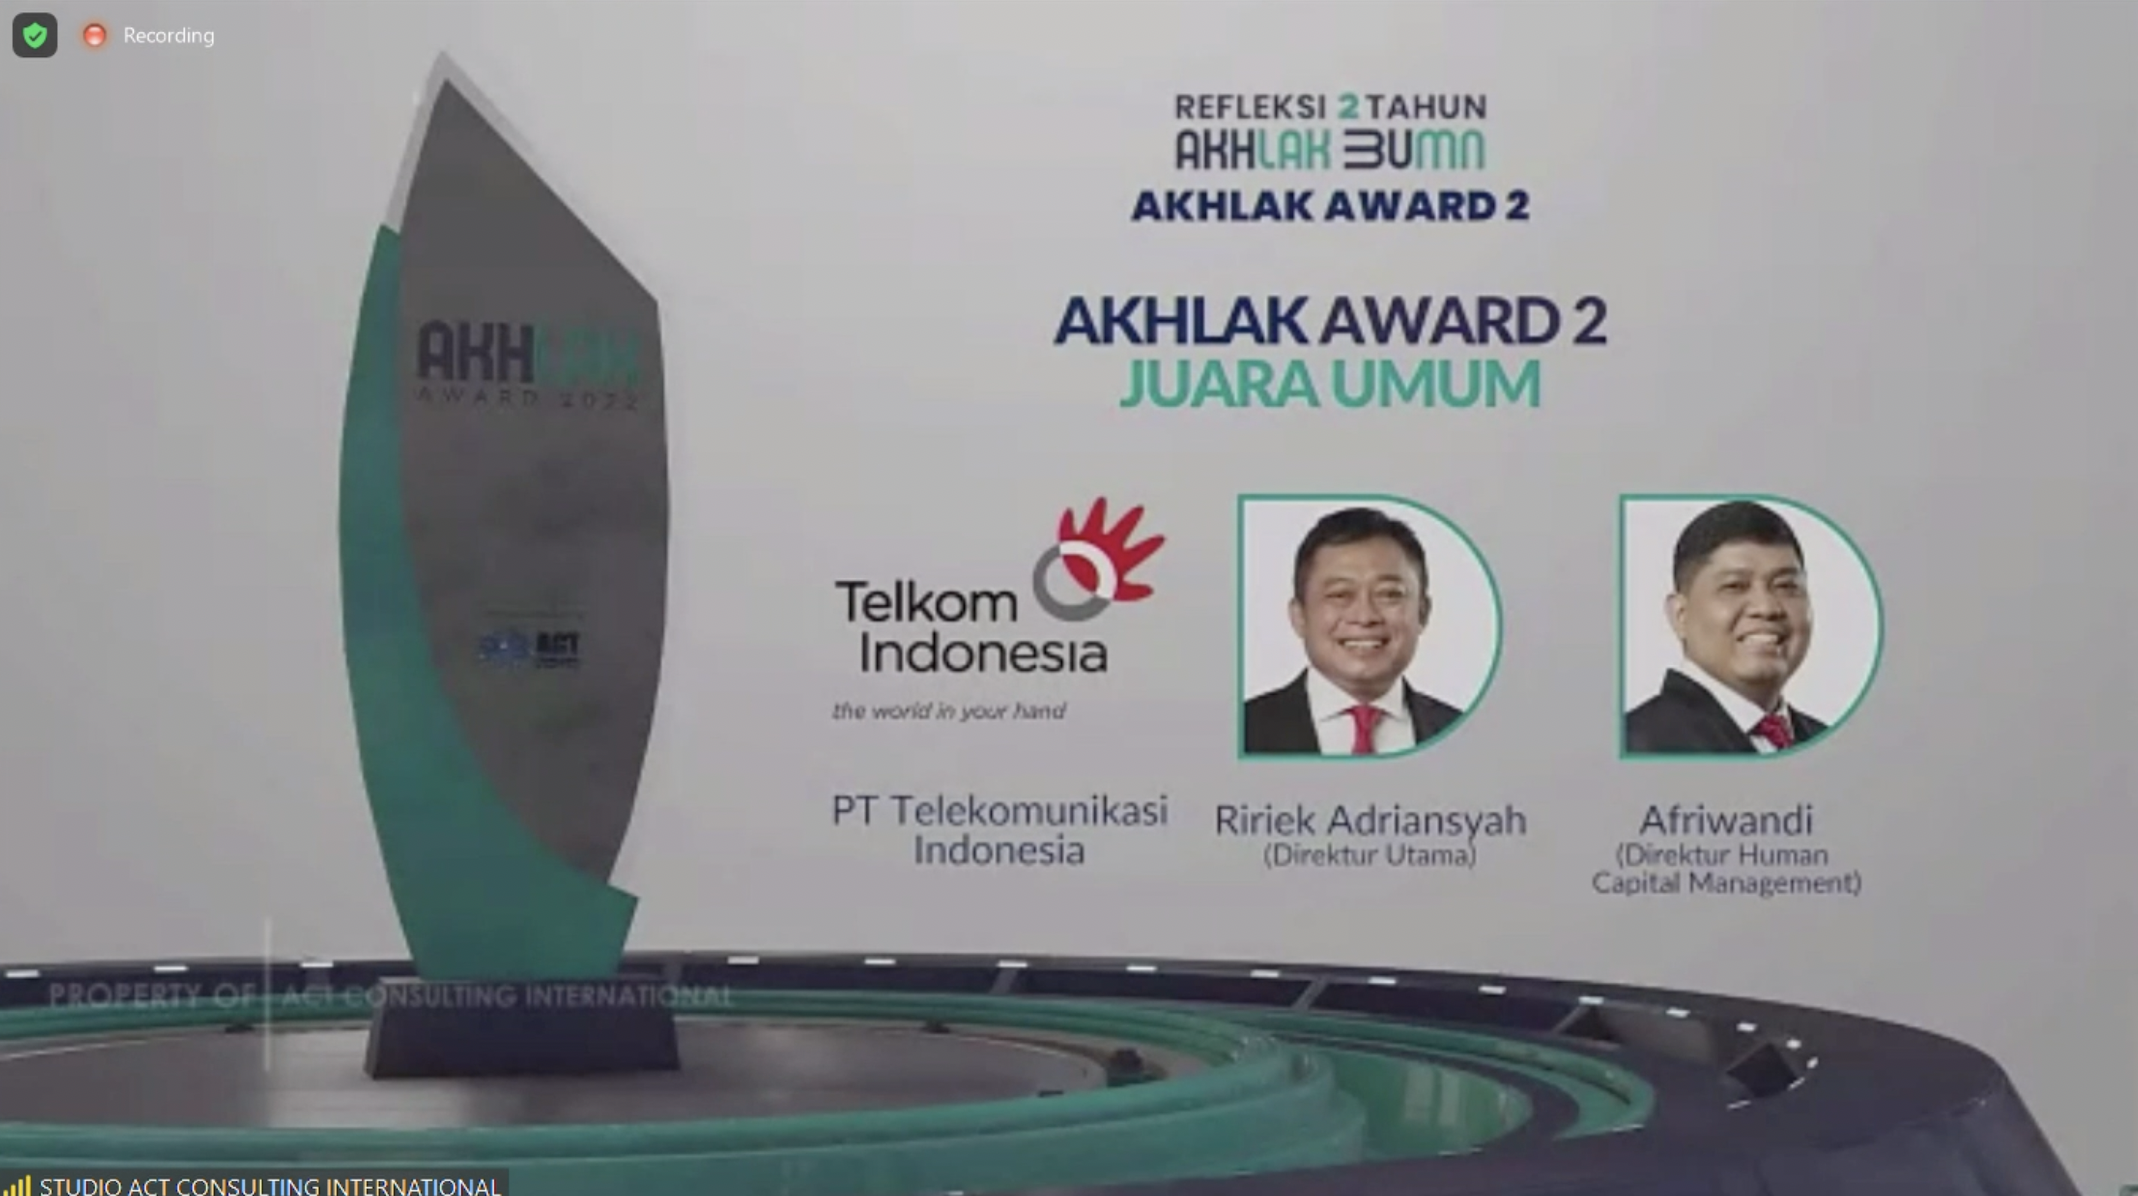 AKHLAK Awards 2022